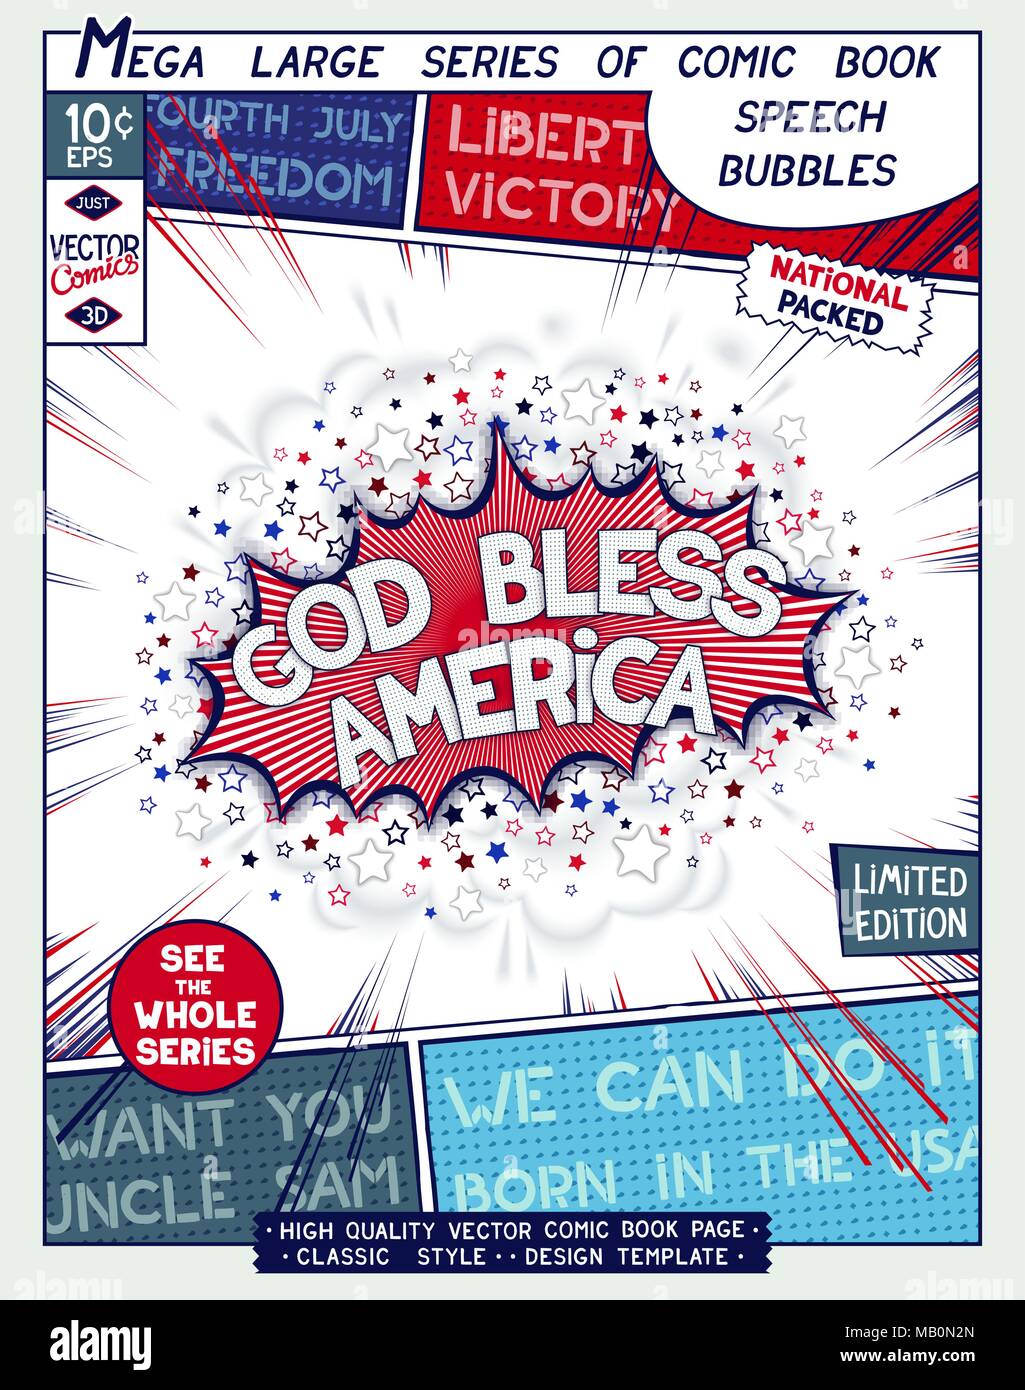 Gott Amerika segnen. Motivation Slogan. Plakat design im Stil von Comics Buch. Sprechblase mit Linien- und 3D-Explosion. Vector Illustration Stock Vektor